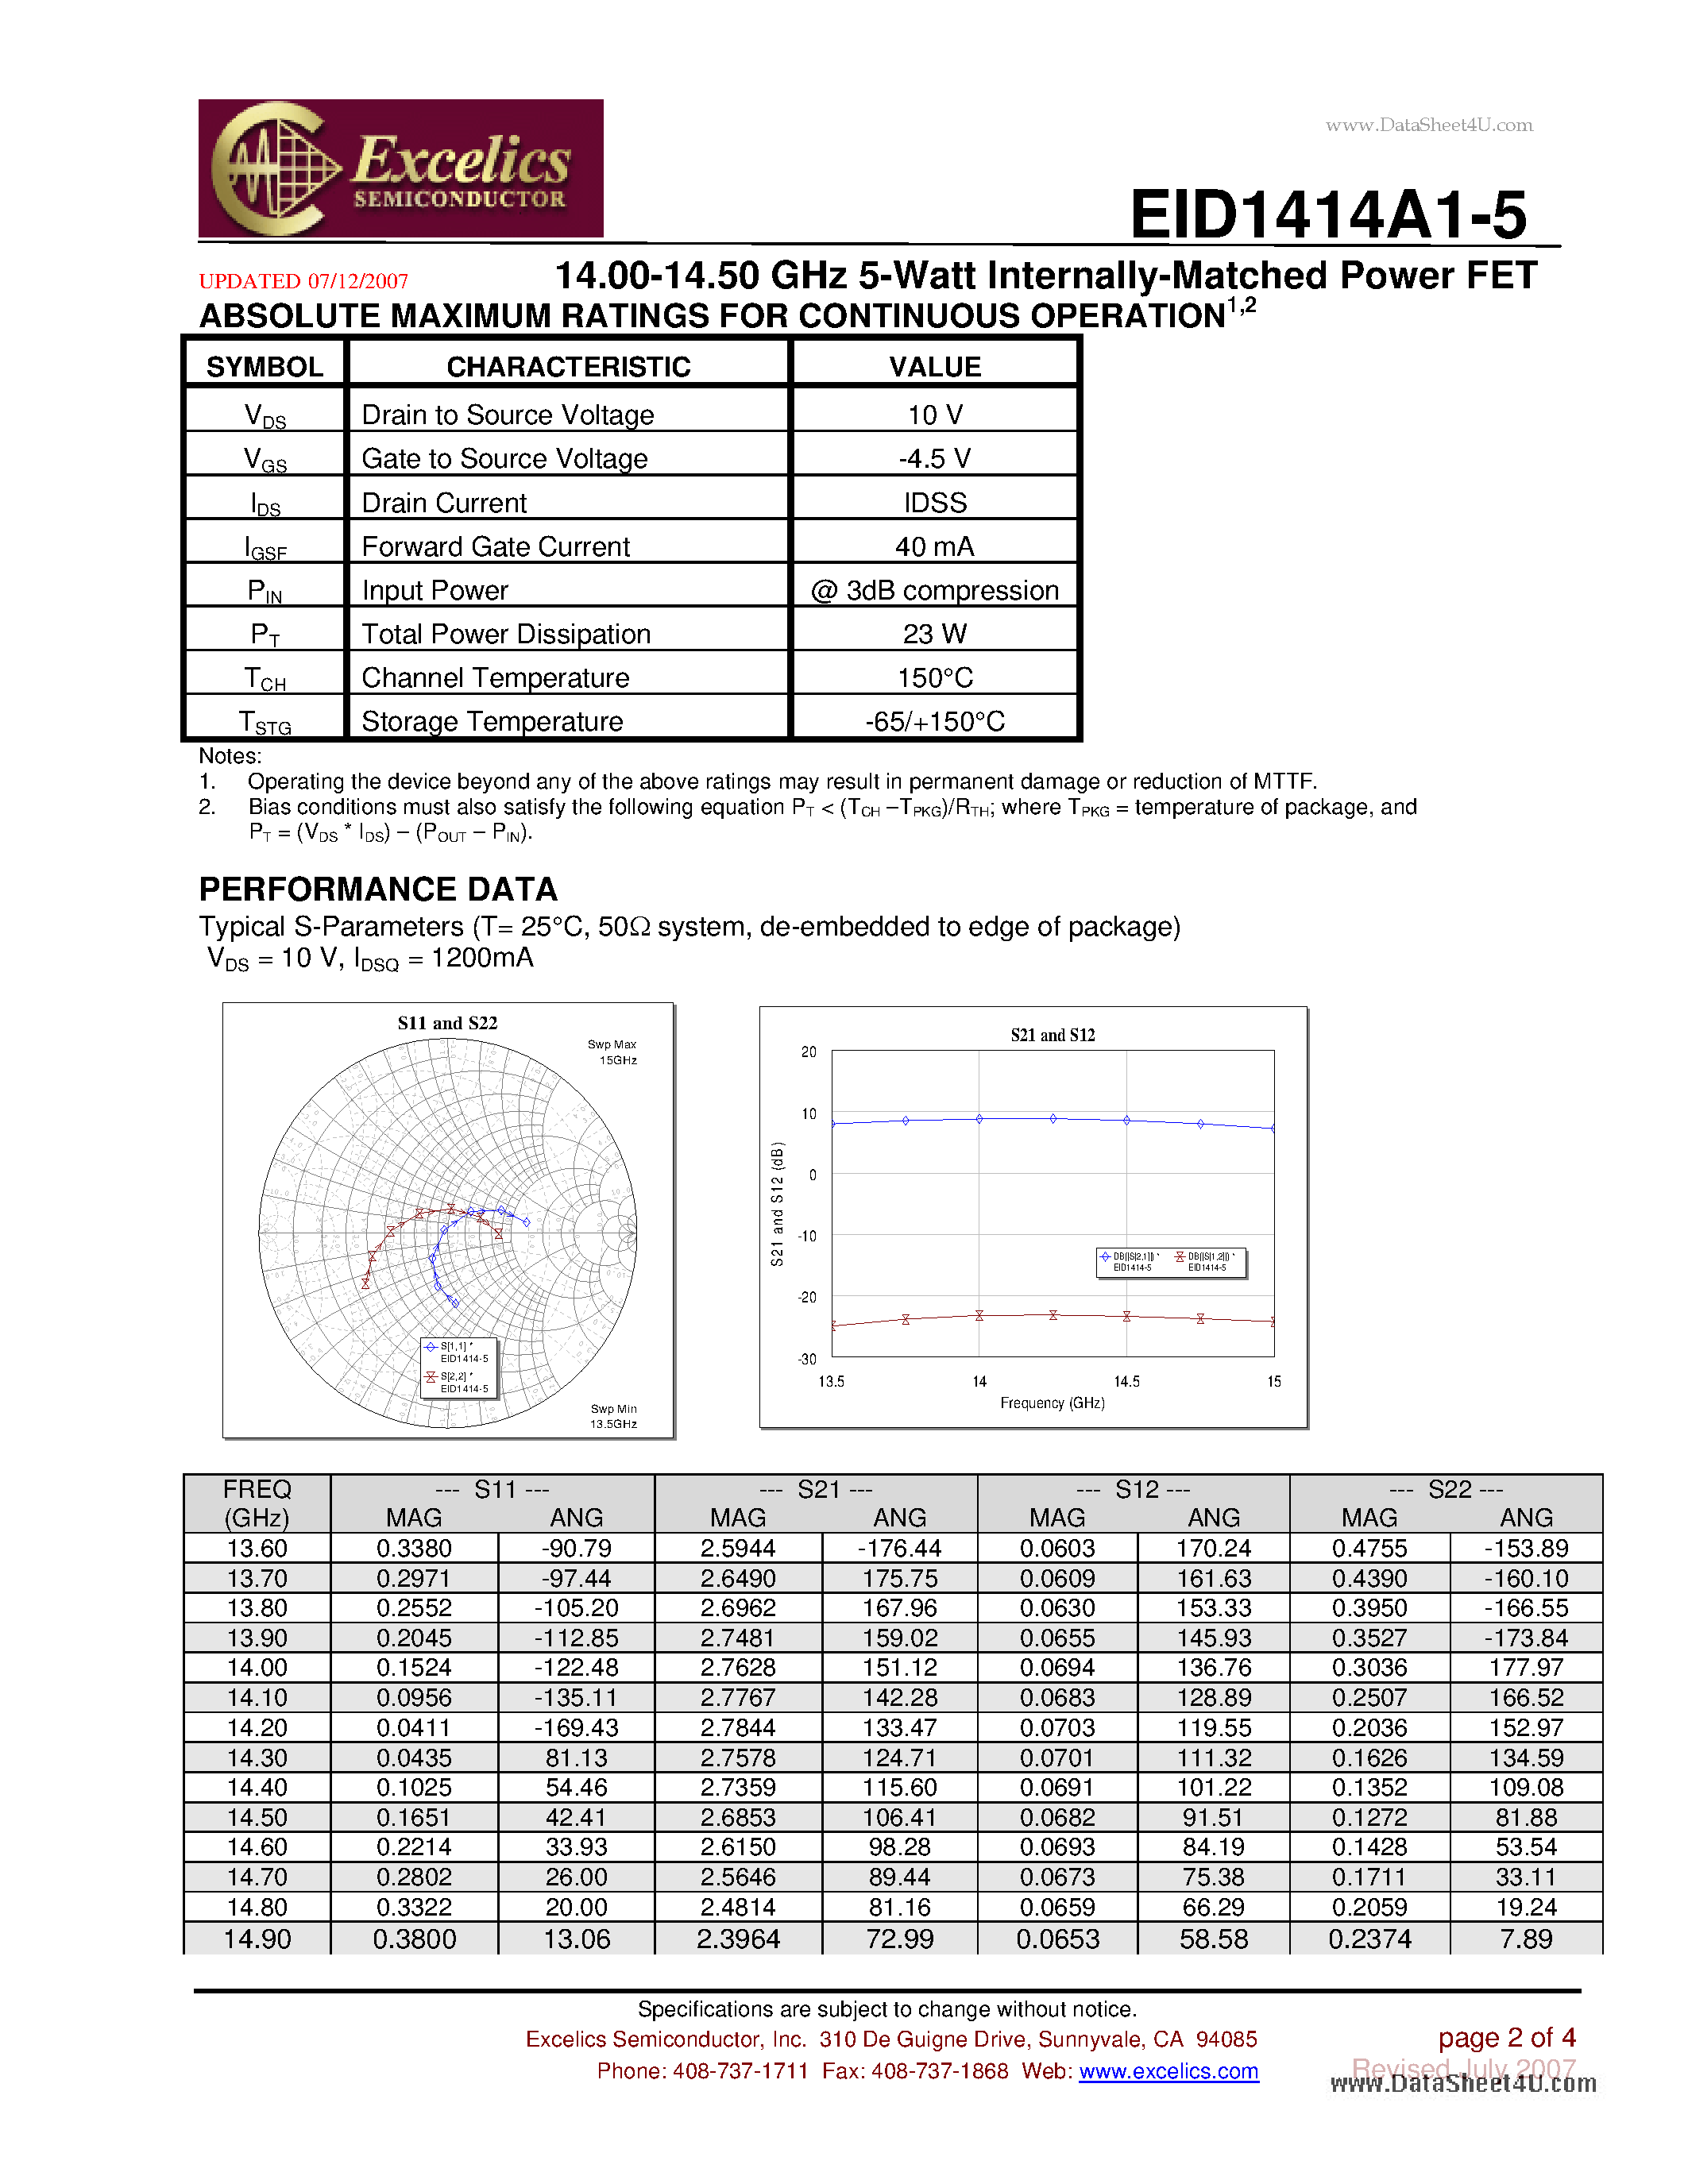 Даташит EID1414A1-5 - 14.00-14.50 GHz 5-Watt Internally-Matched Power FET страница 2